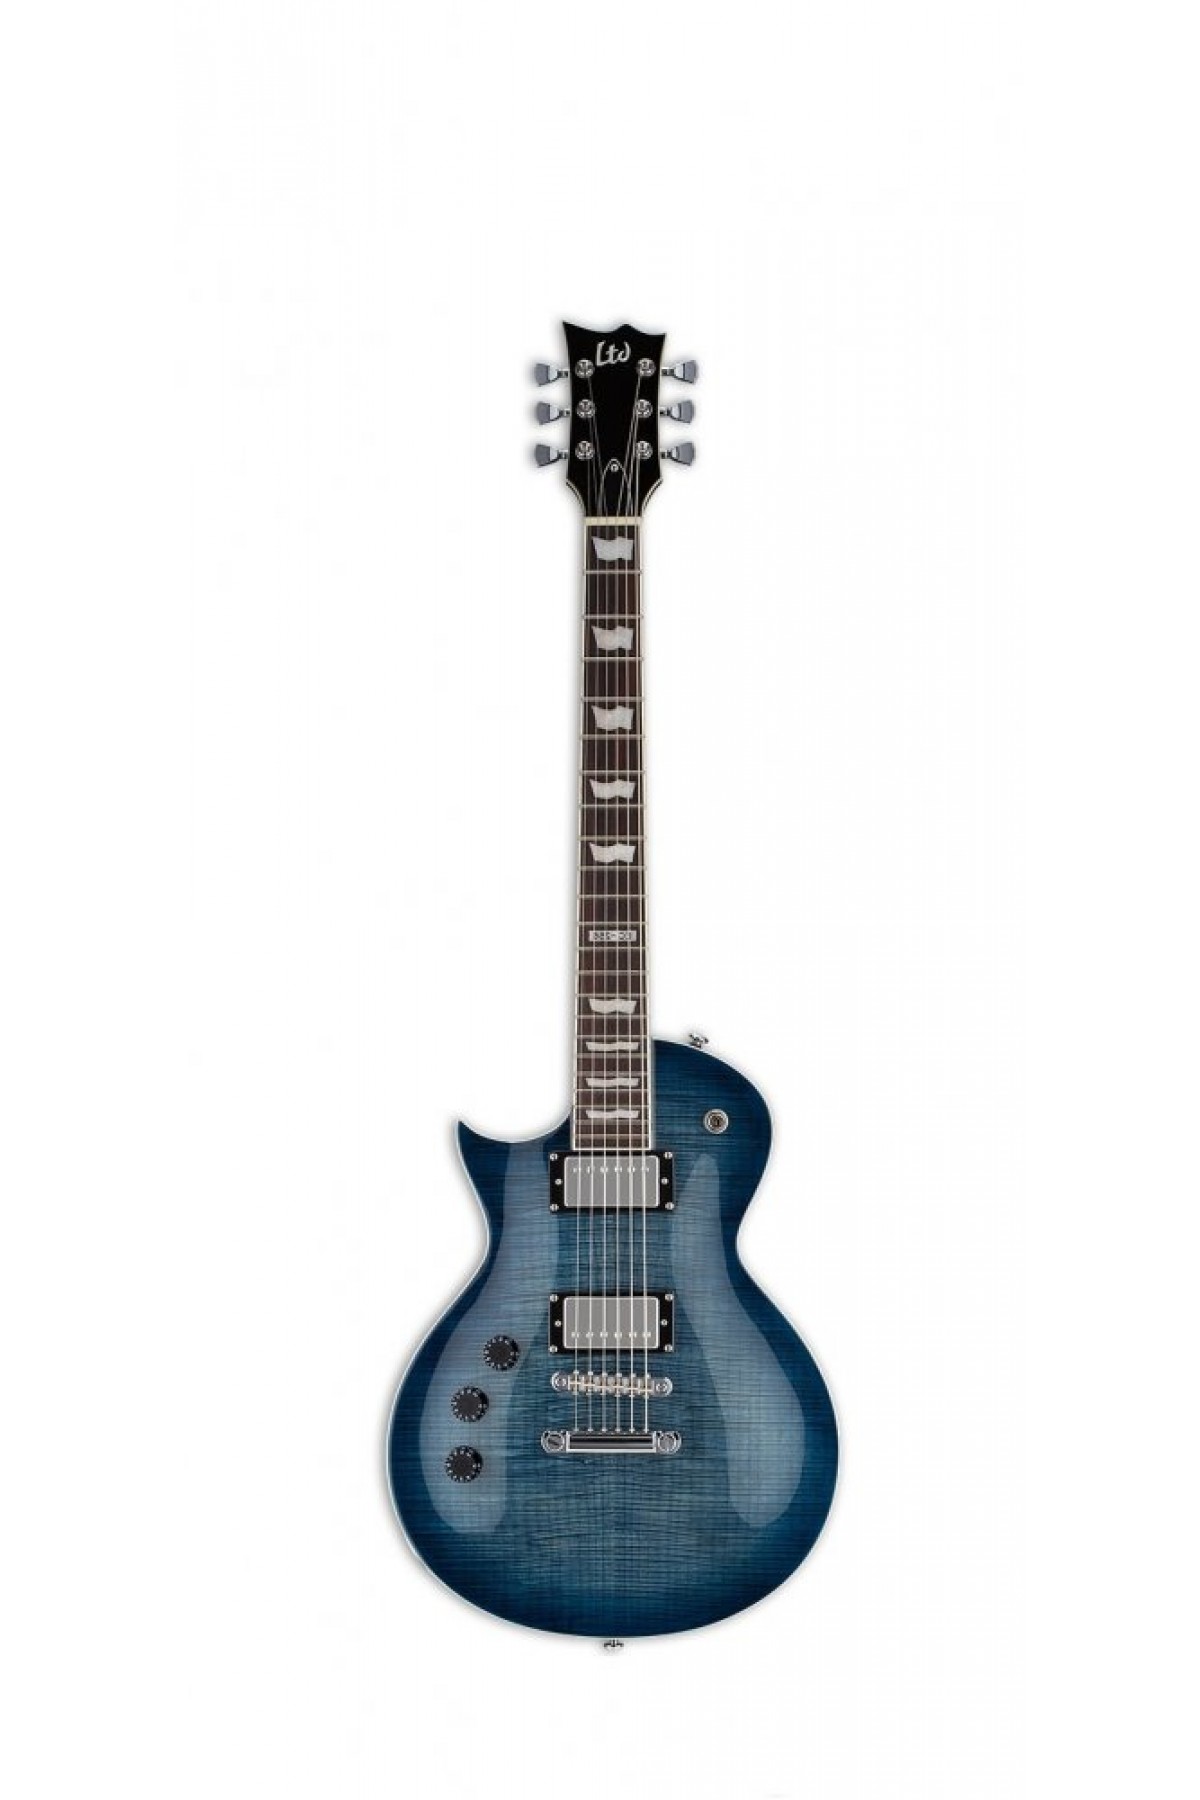 ESP LTD EC-256 Cobalt Blue Solak Elektro Gitar